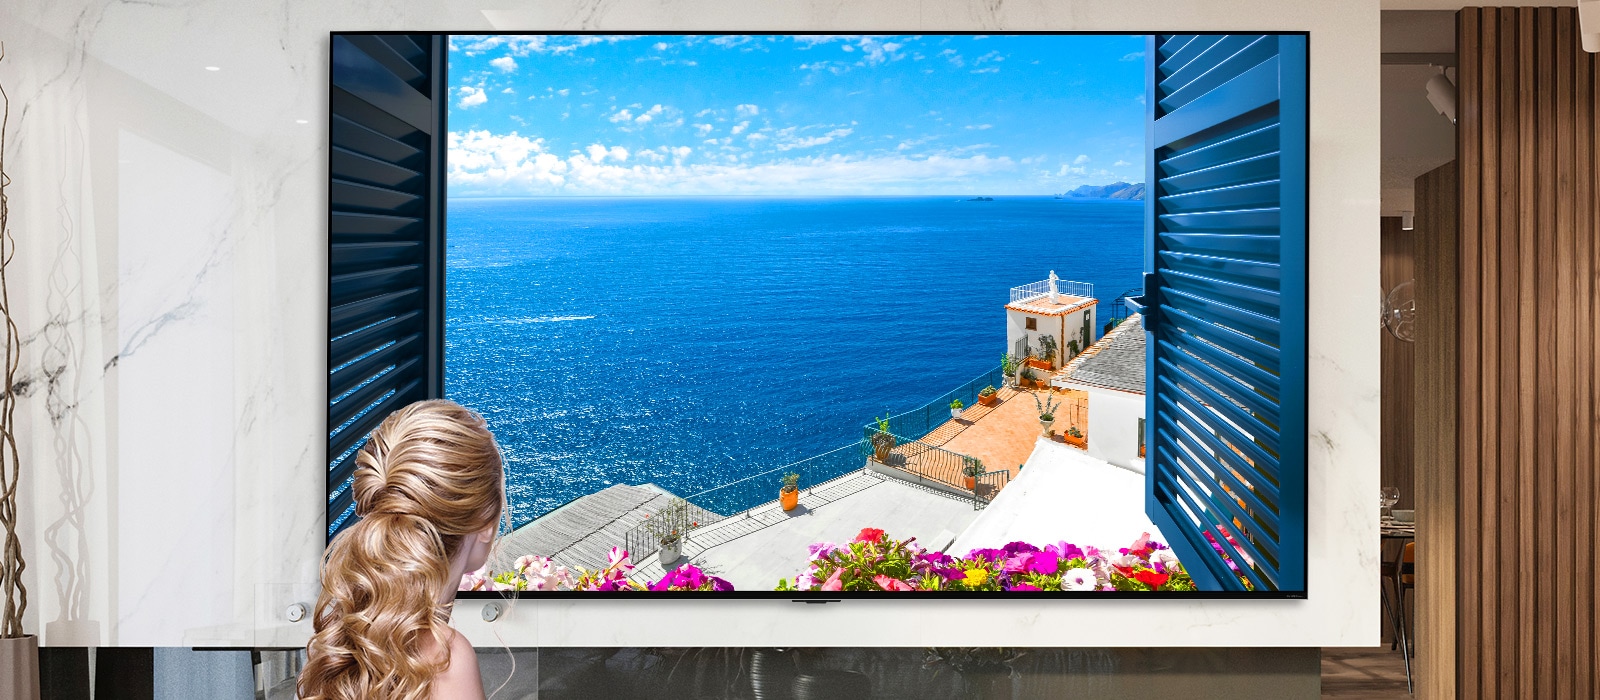 A képen egy nő látható hátulról, amint egy ablakon keresztül nézi a kék tengert és fehér épületeket. Az oldalt lefelé görgetve a kép egyre nagyobb nagyításban látható, egyre több részletet mutatva meg a szobából, végül felfedve, hogy az ablak valójában egy LG QNED MiniLED TV.